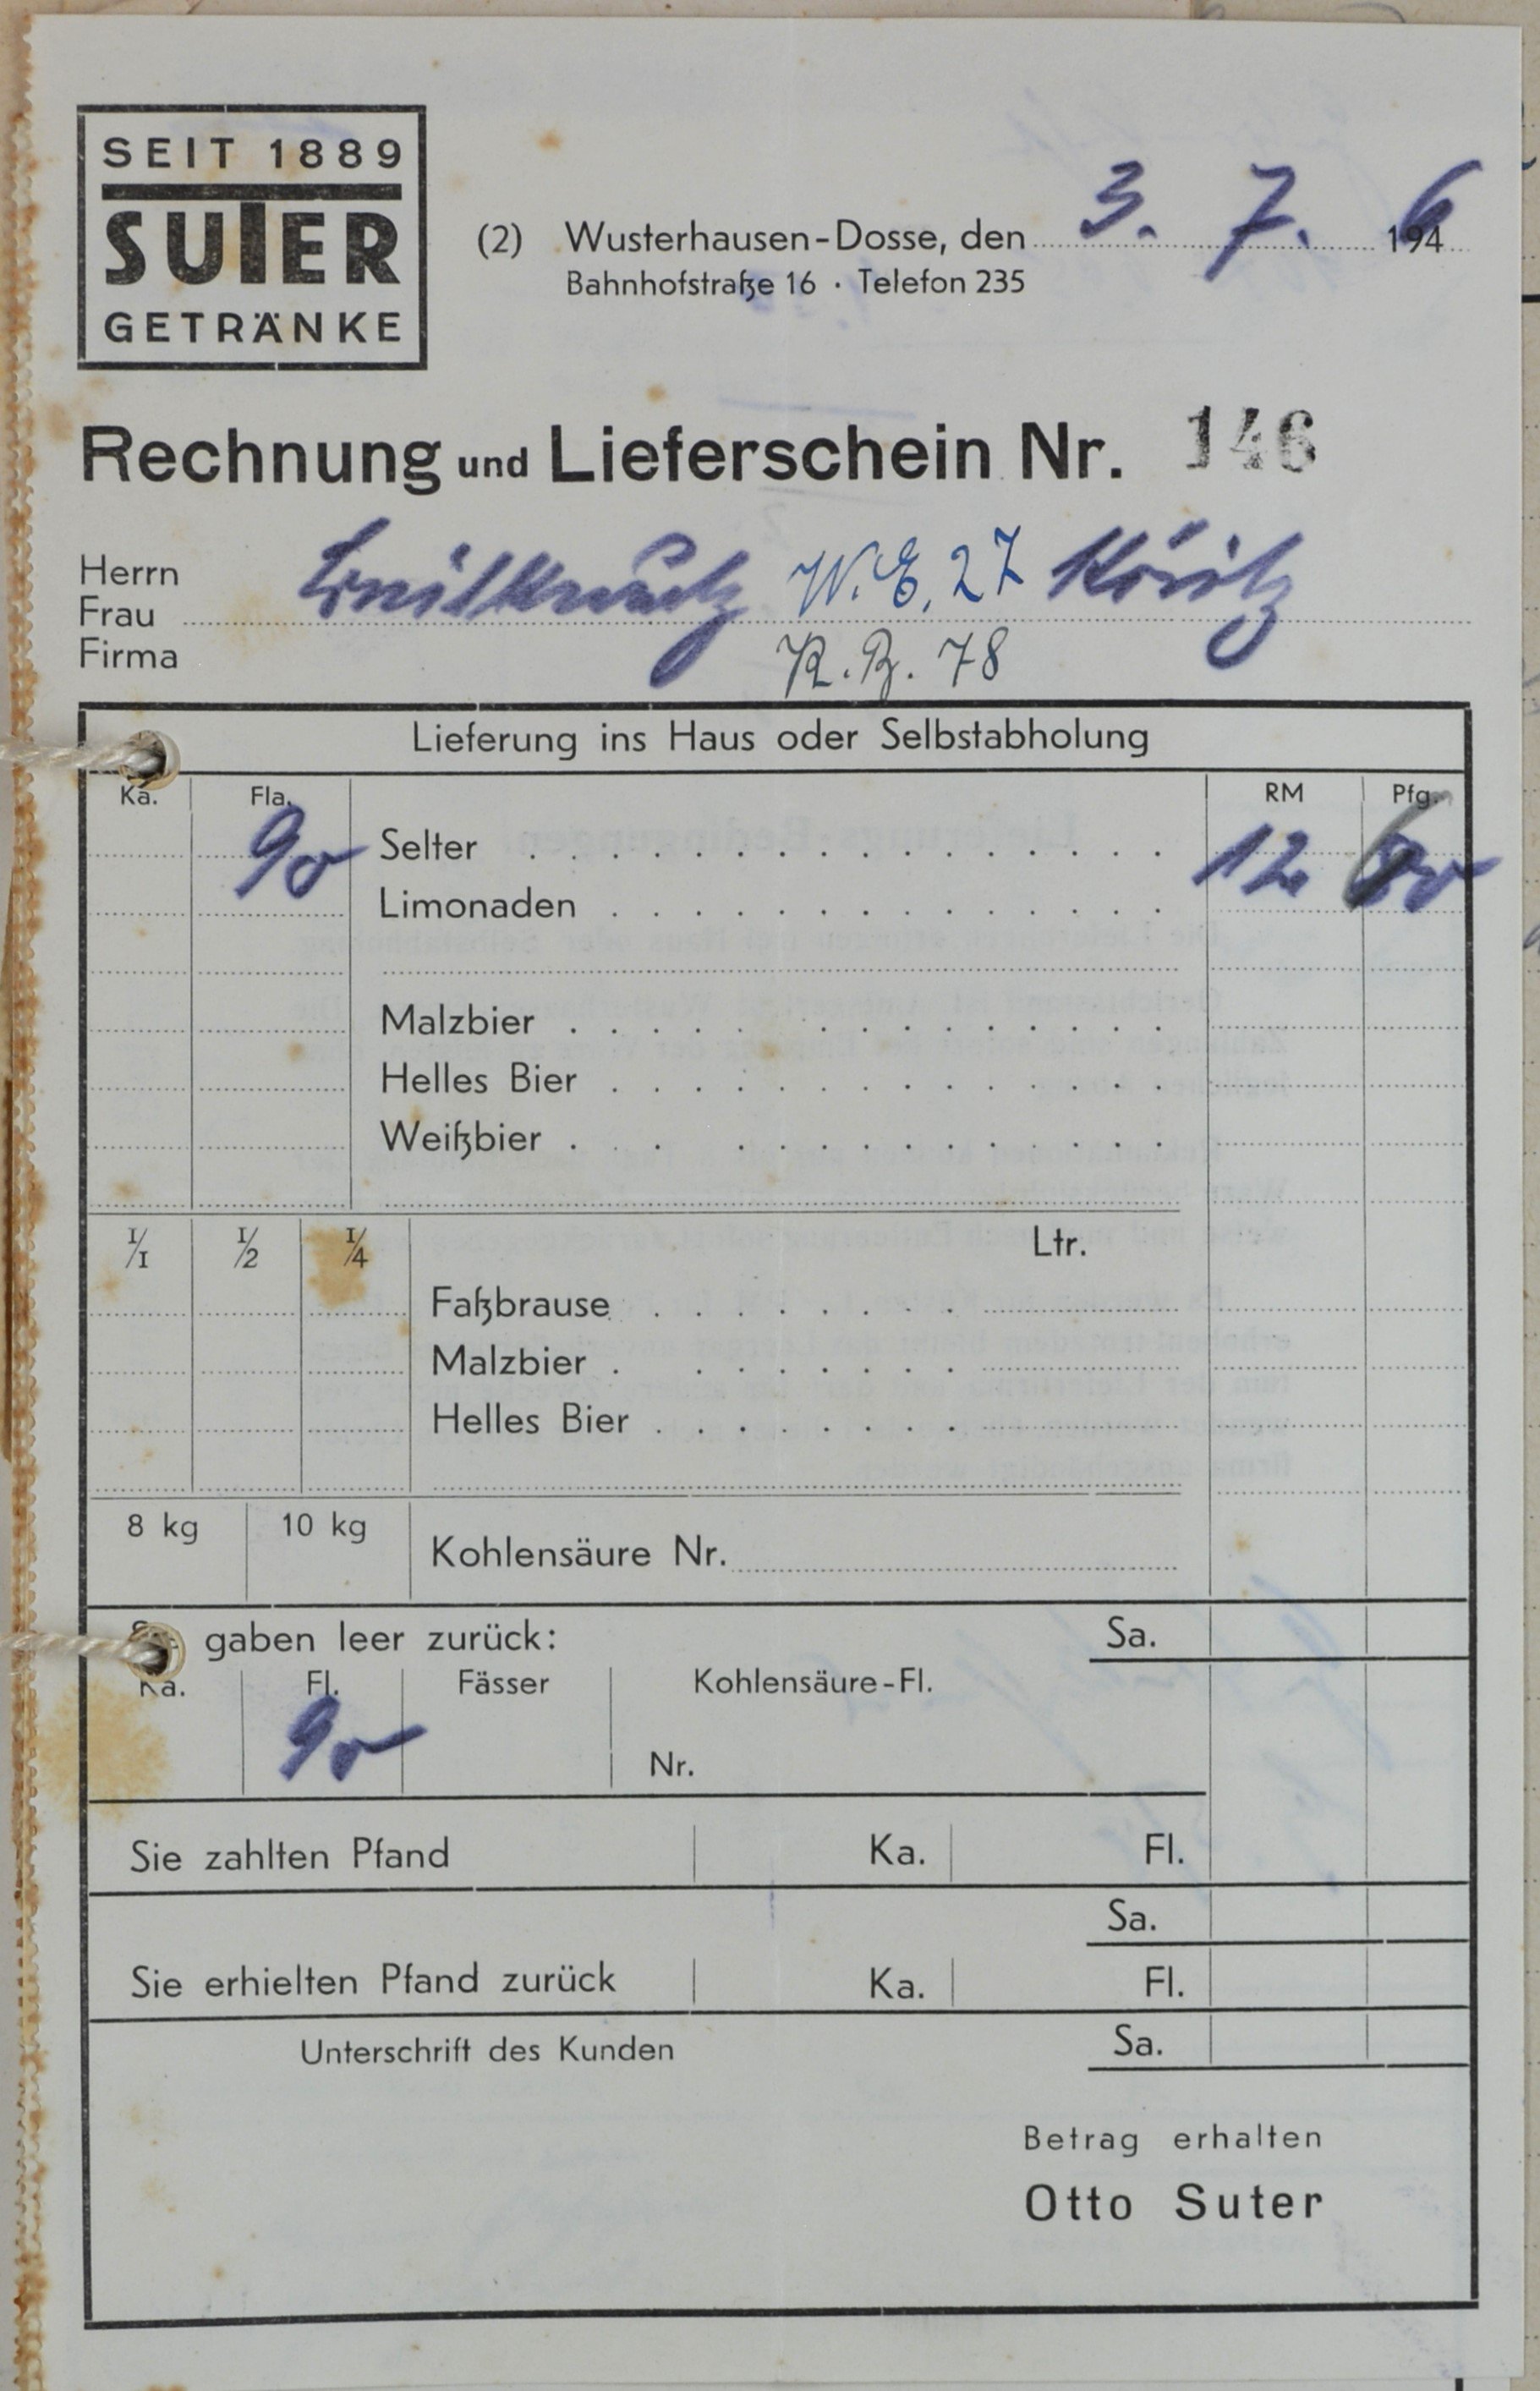 Rechnung von Otto Suter-Suter Getränke aus Wusterhausen (Dosse) für Wilhelm Breitkreuz (DDR Geschichtsmuseum im Dokumentationszentrum Perleberg CC BY-SA)